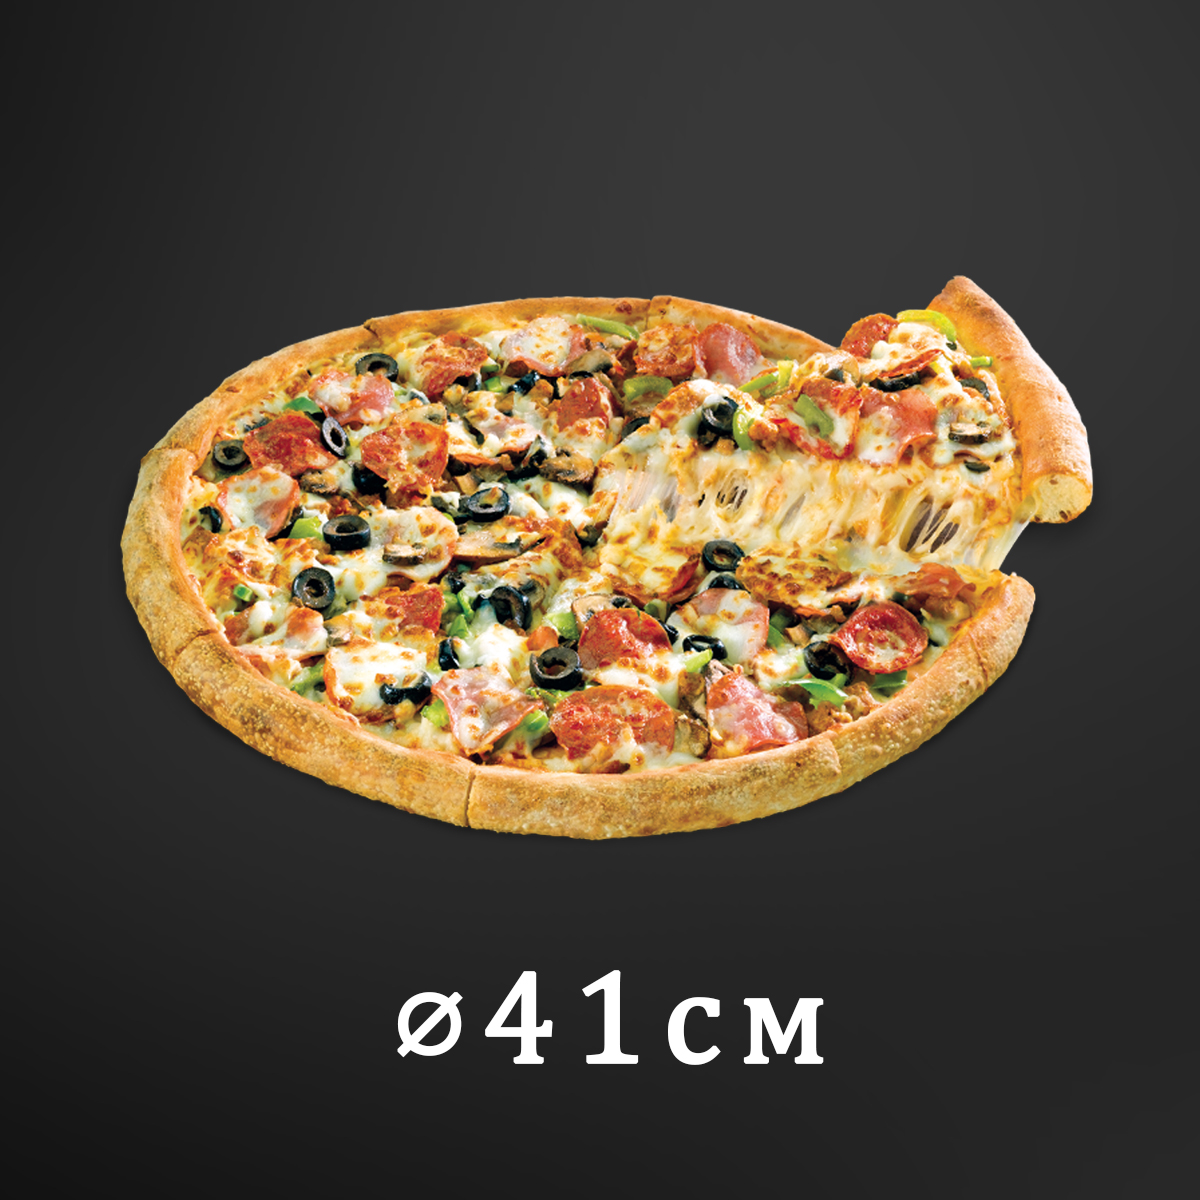 цены на пиццу в ассортименте фото 32